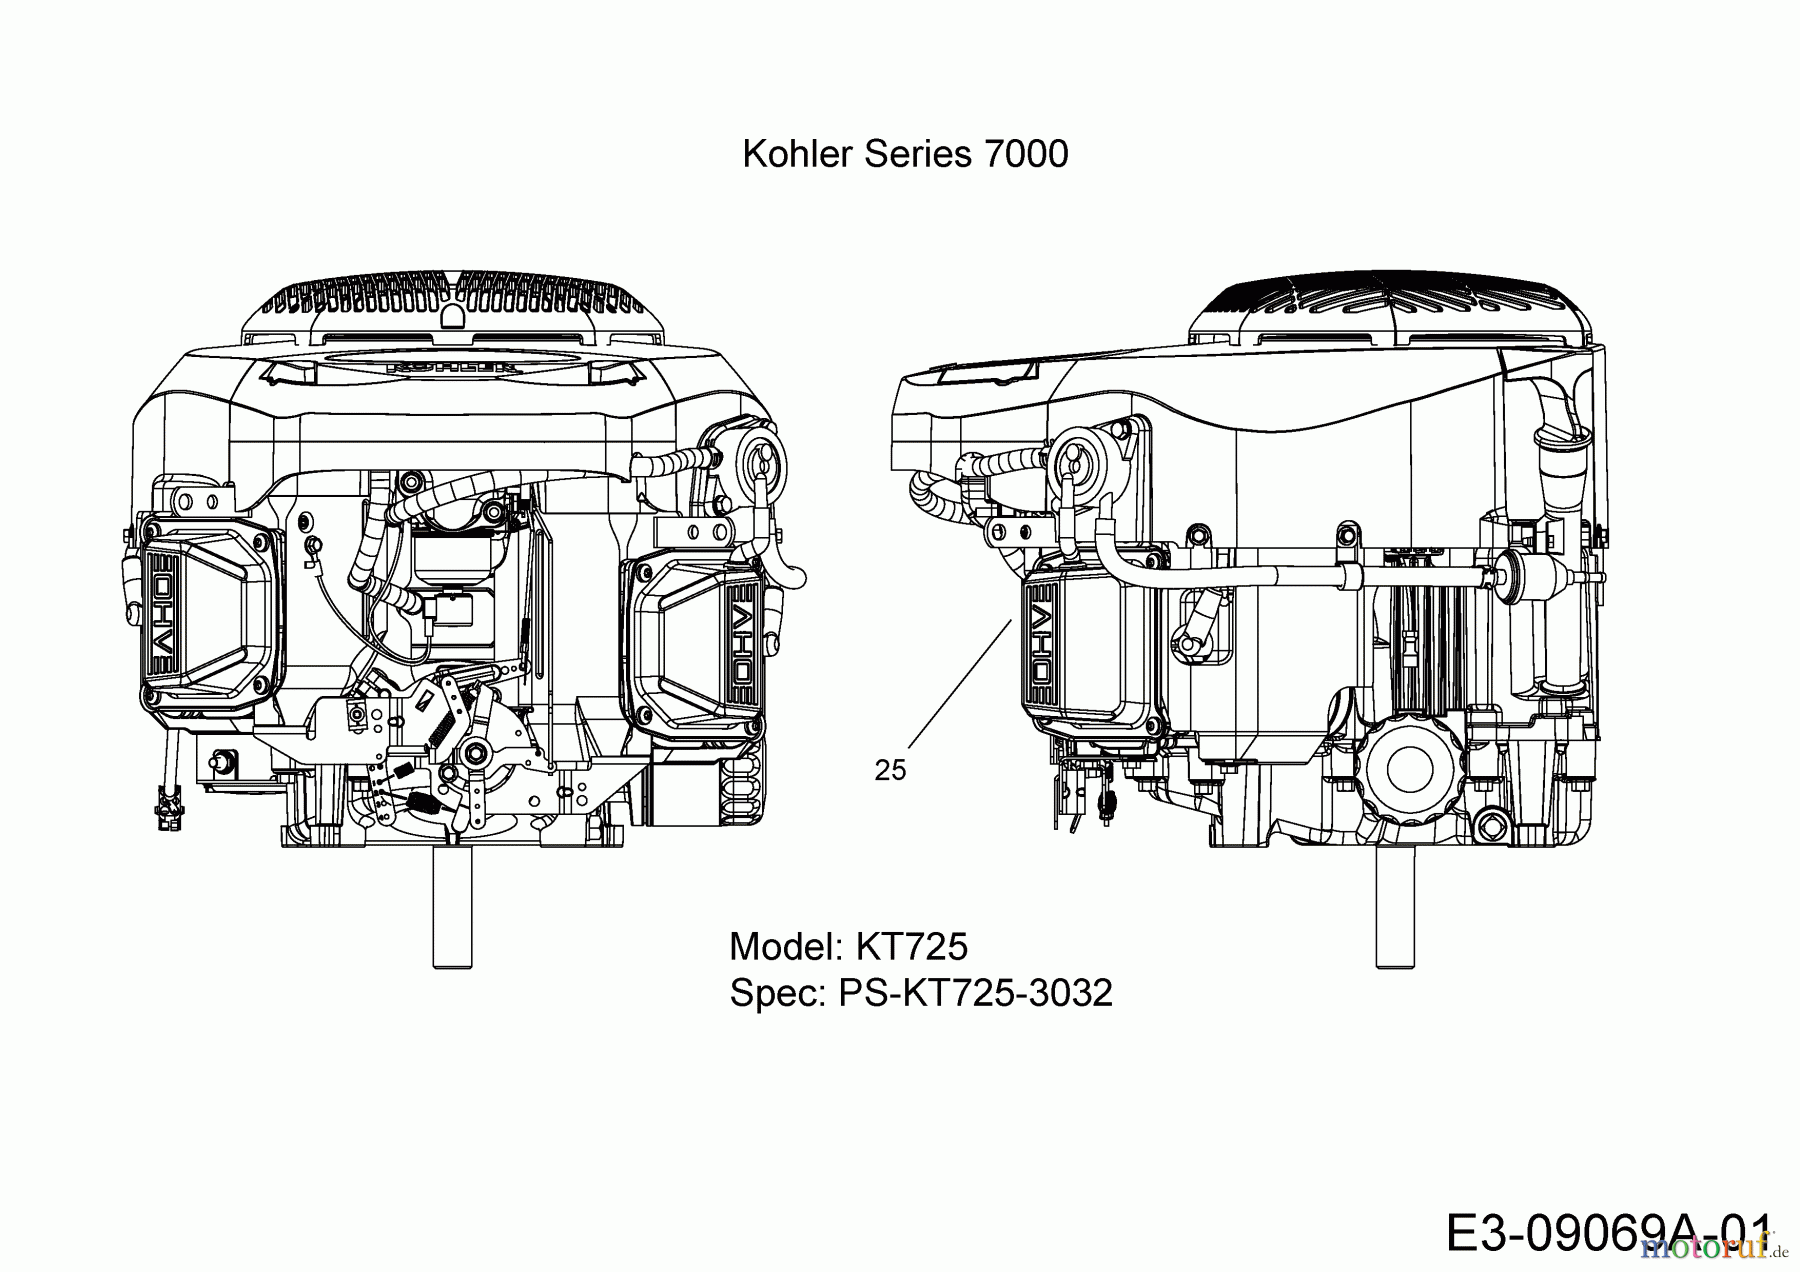  Massey Ferguson Rasentraktoren MF 36-22 HG 13HP91GI695  (2015) Motor Kohler